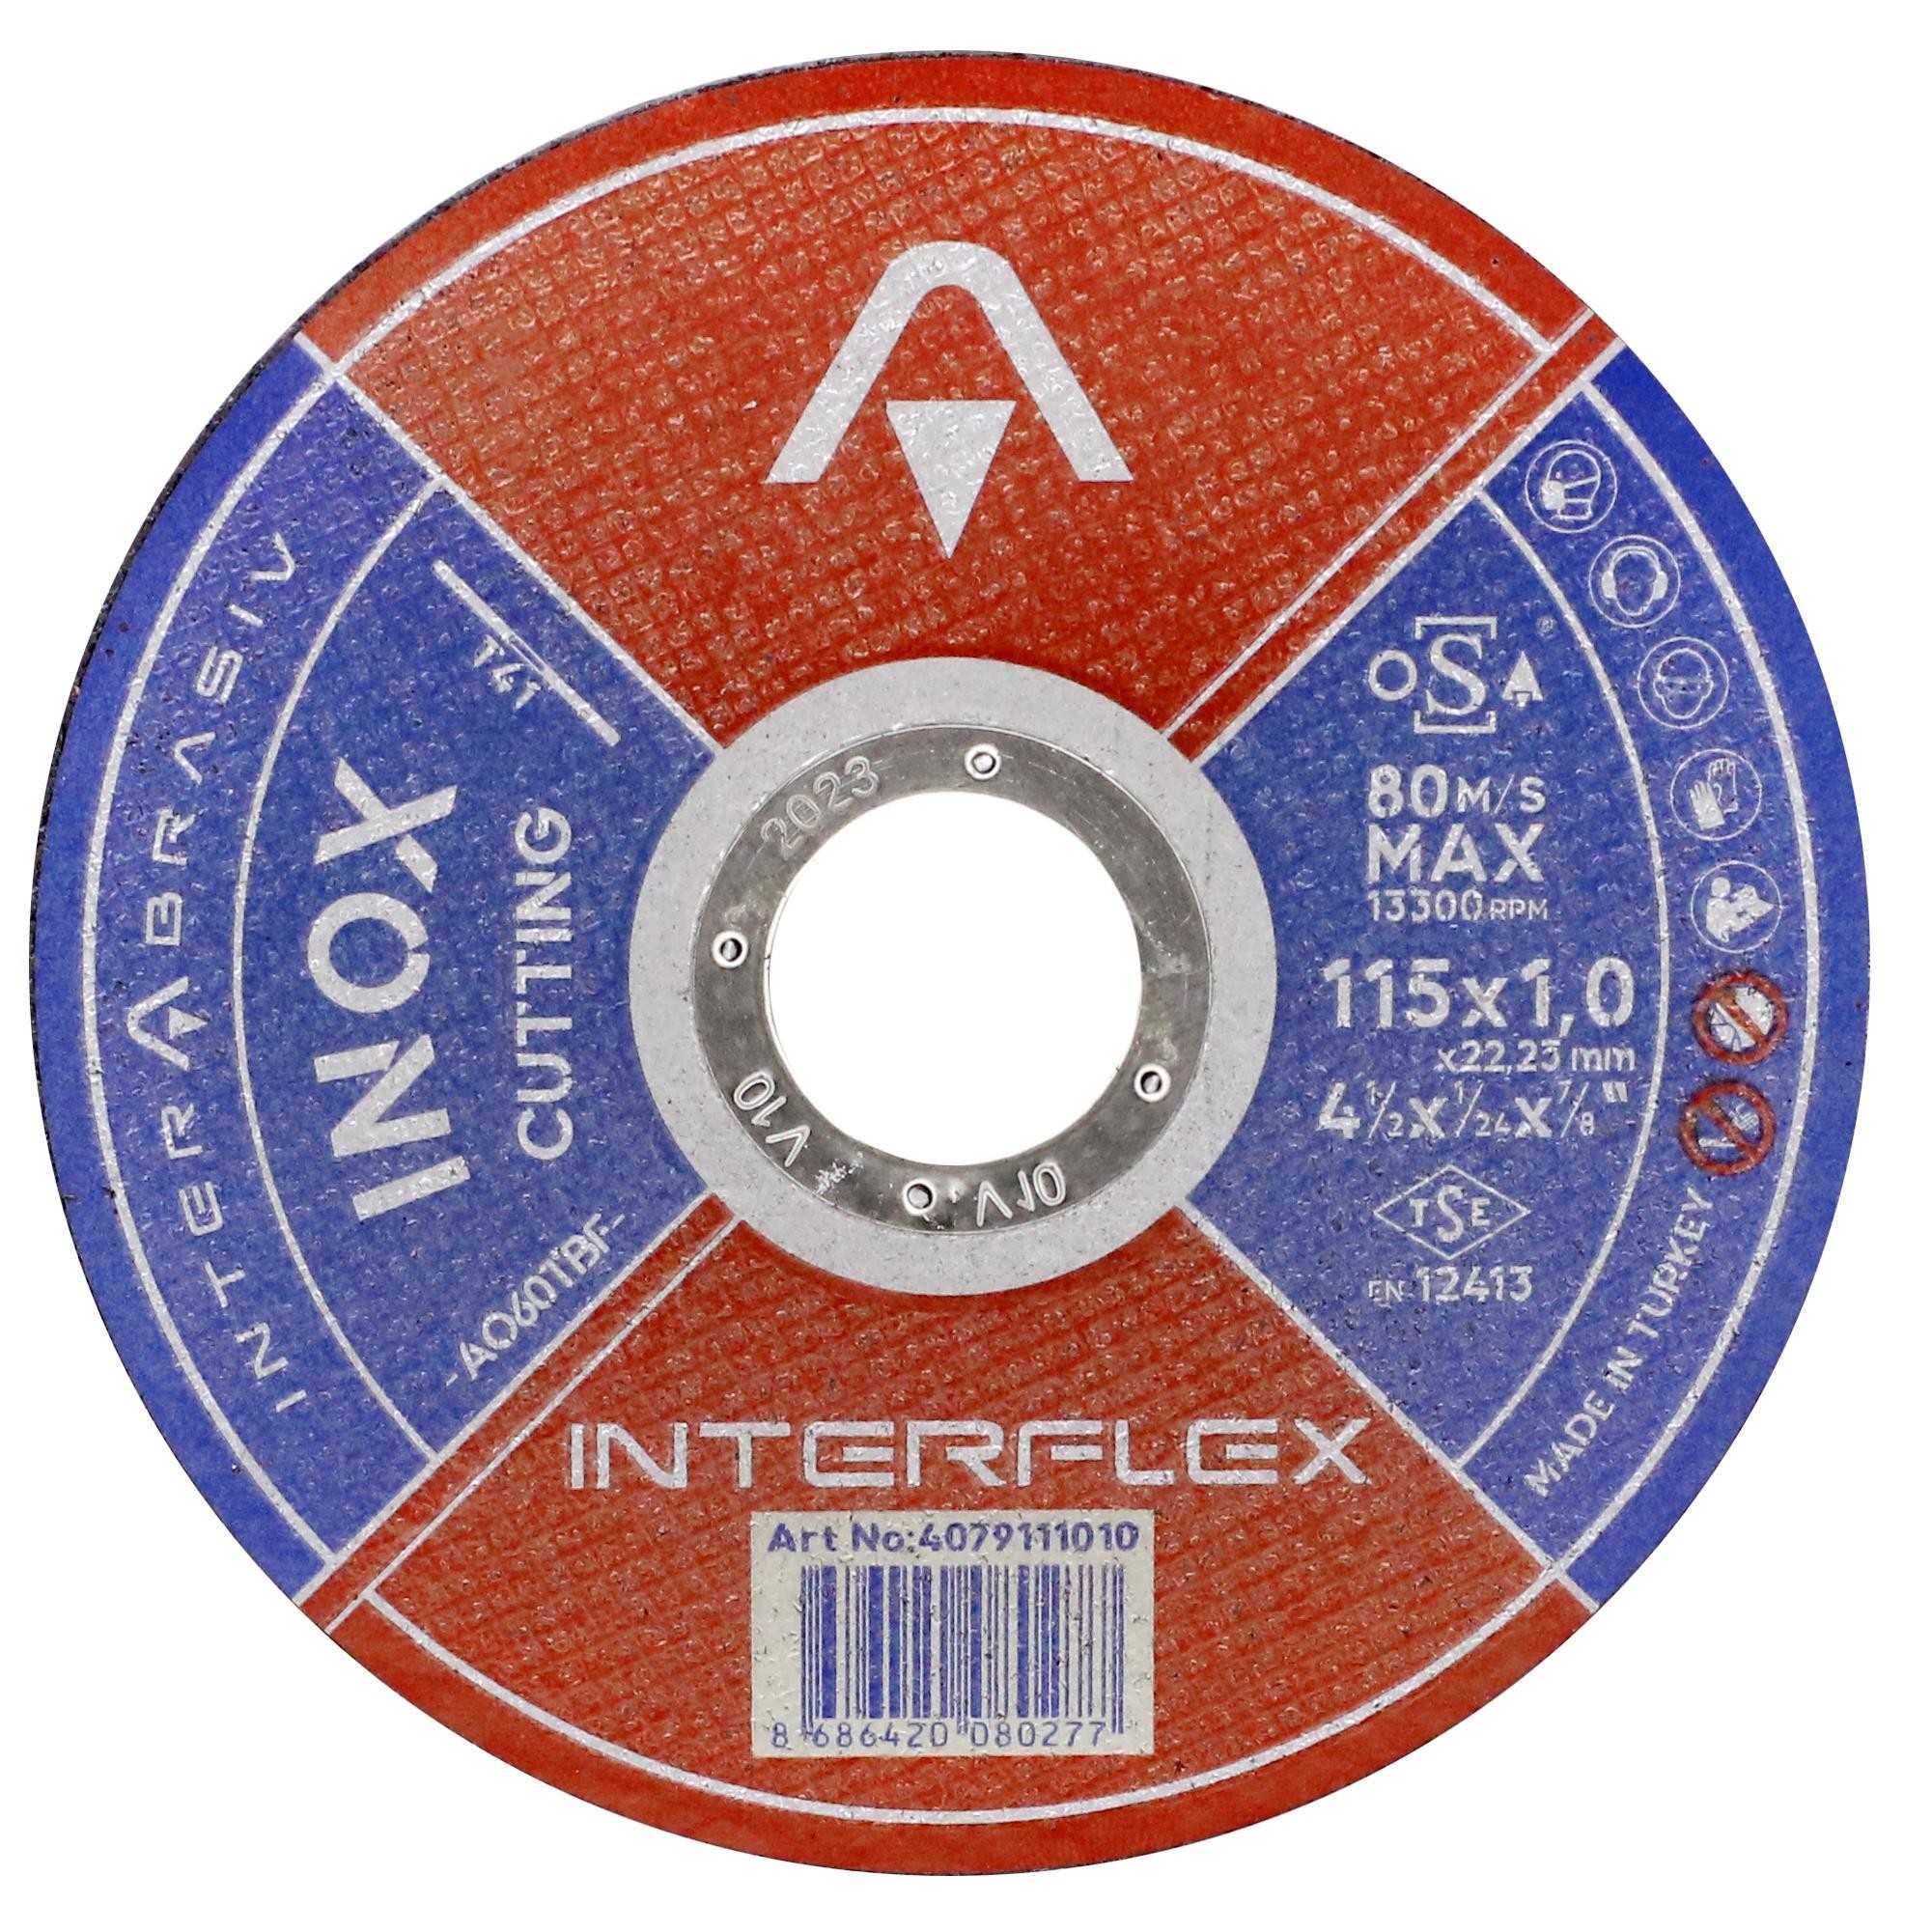 İnterflex İnox Metal Kesici Taş Disk 115x1.0x22.23 mm (5 ADET)